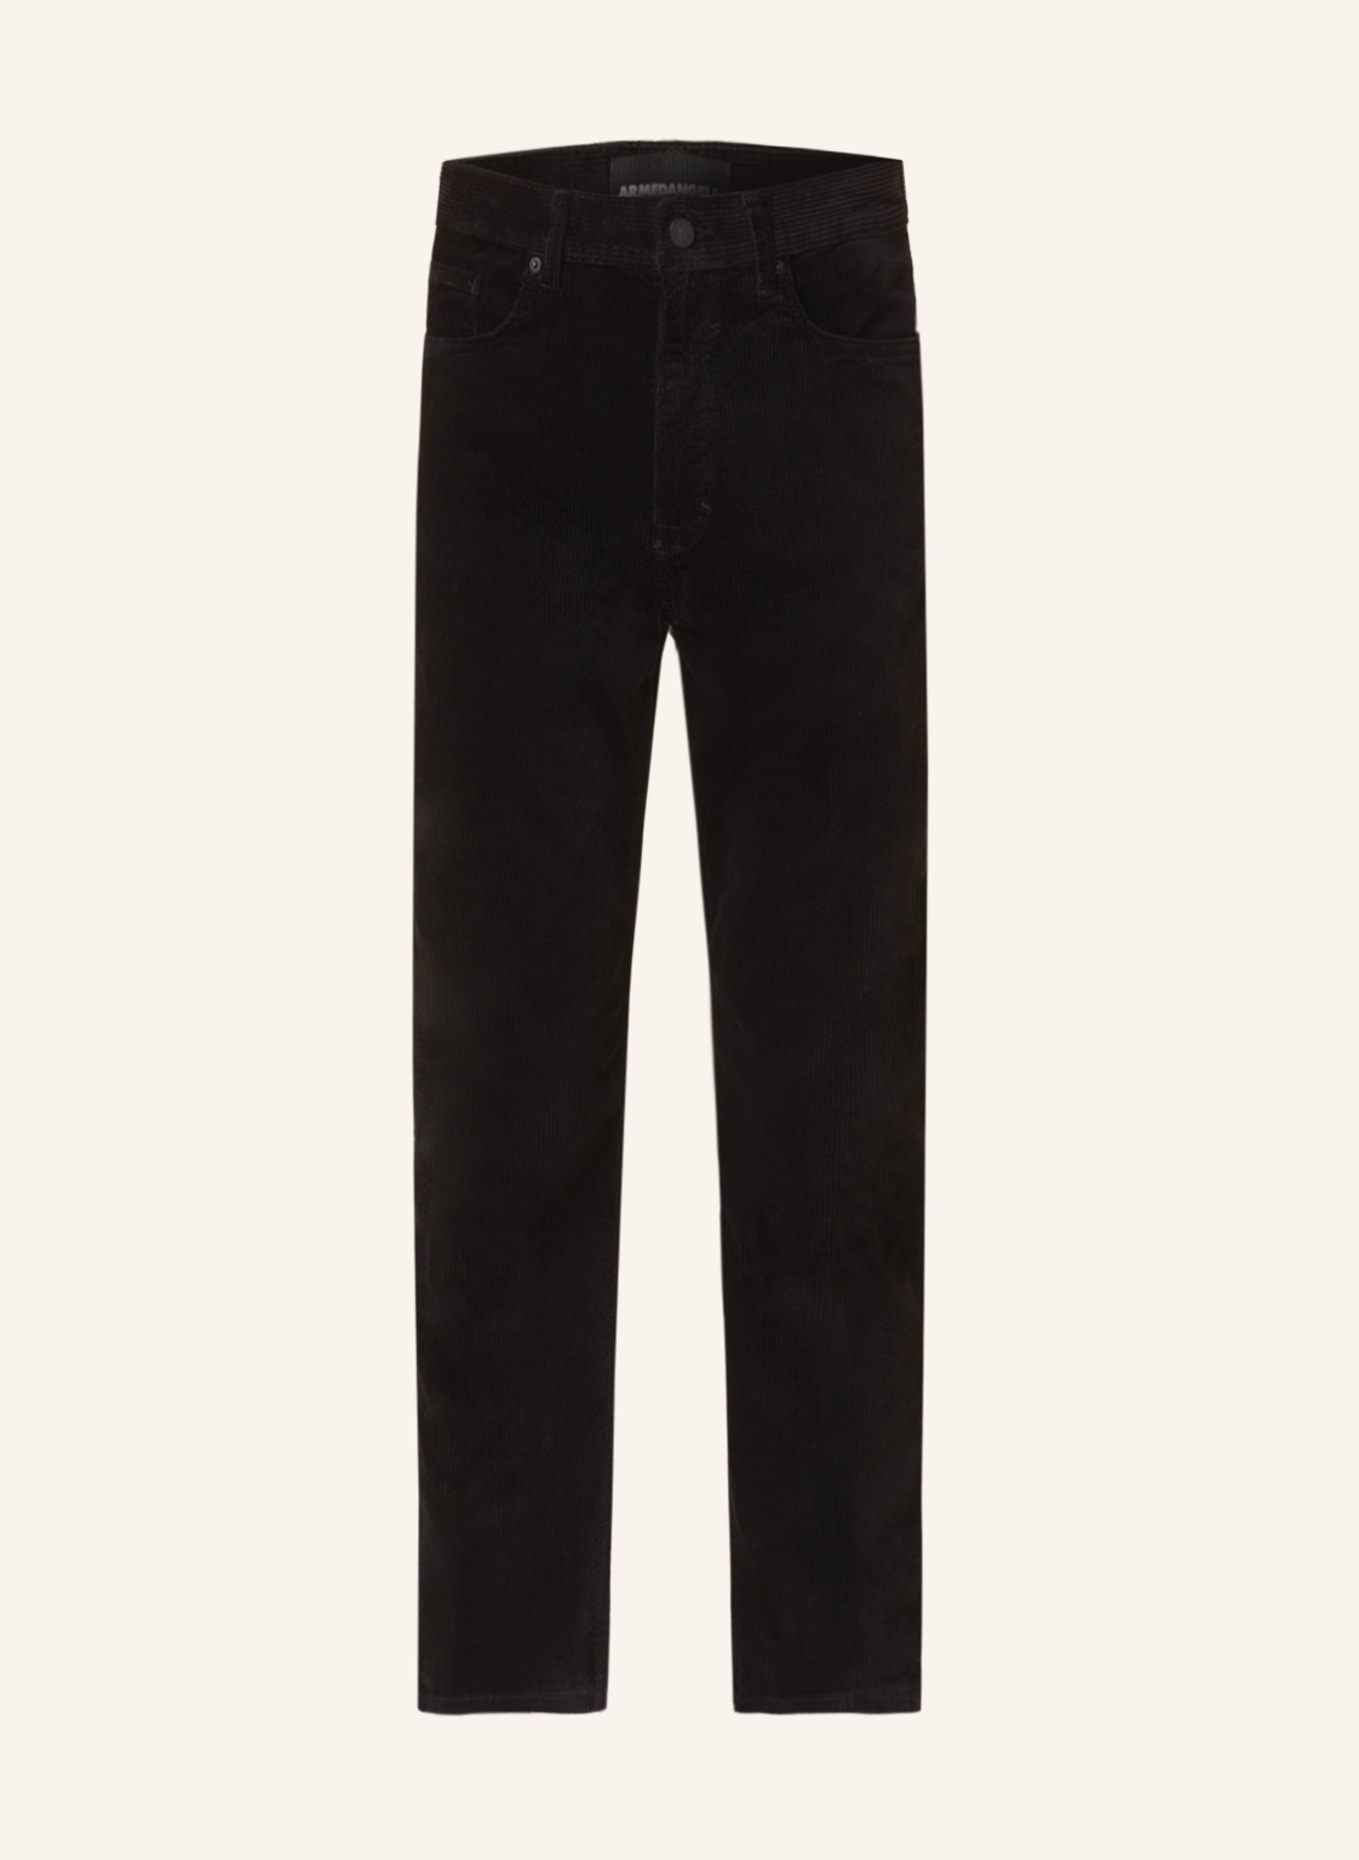 ARMEDANGELS Corduroy trousers MAAKX slim fit, Color: BLACK (Image 1)